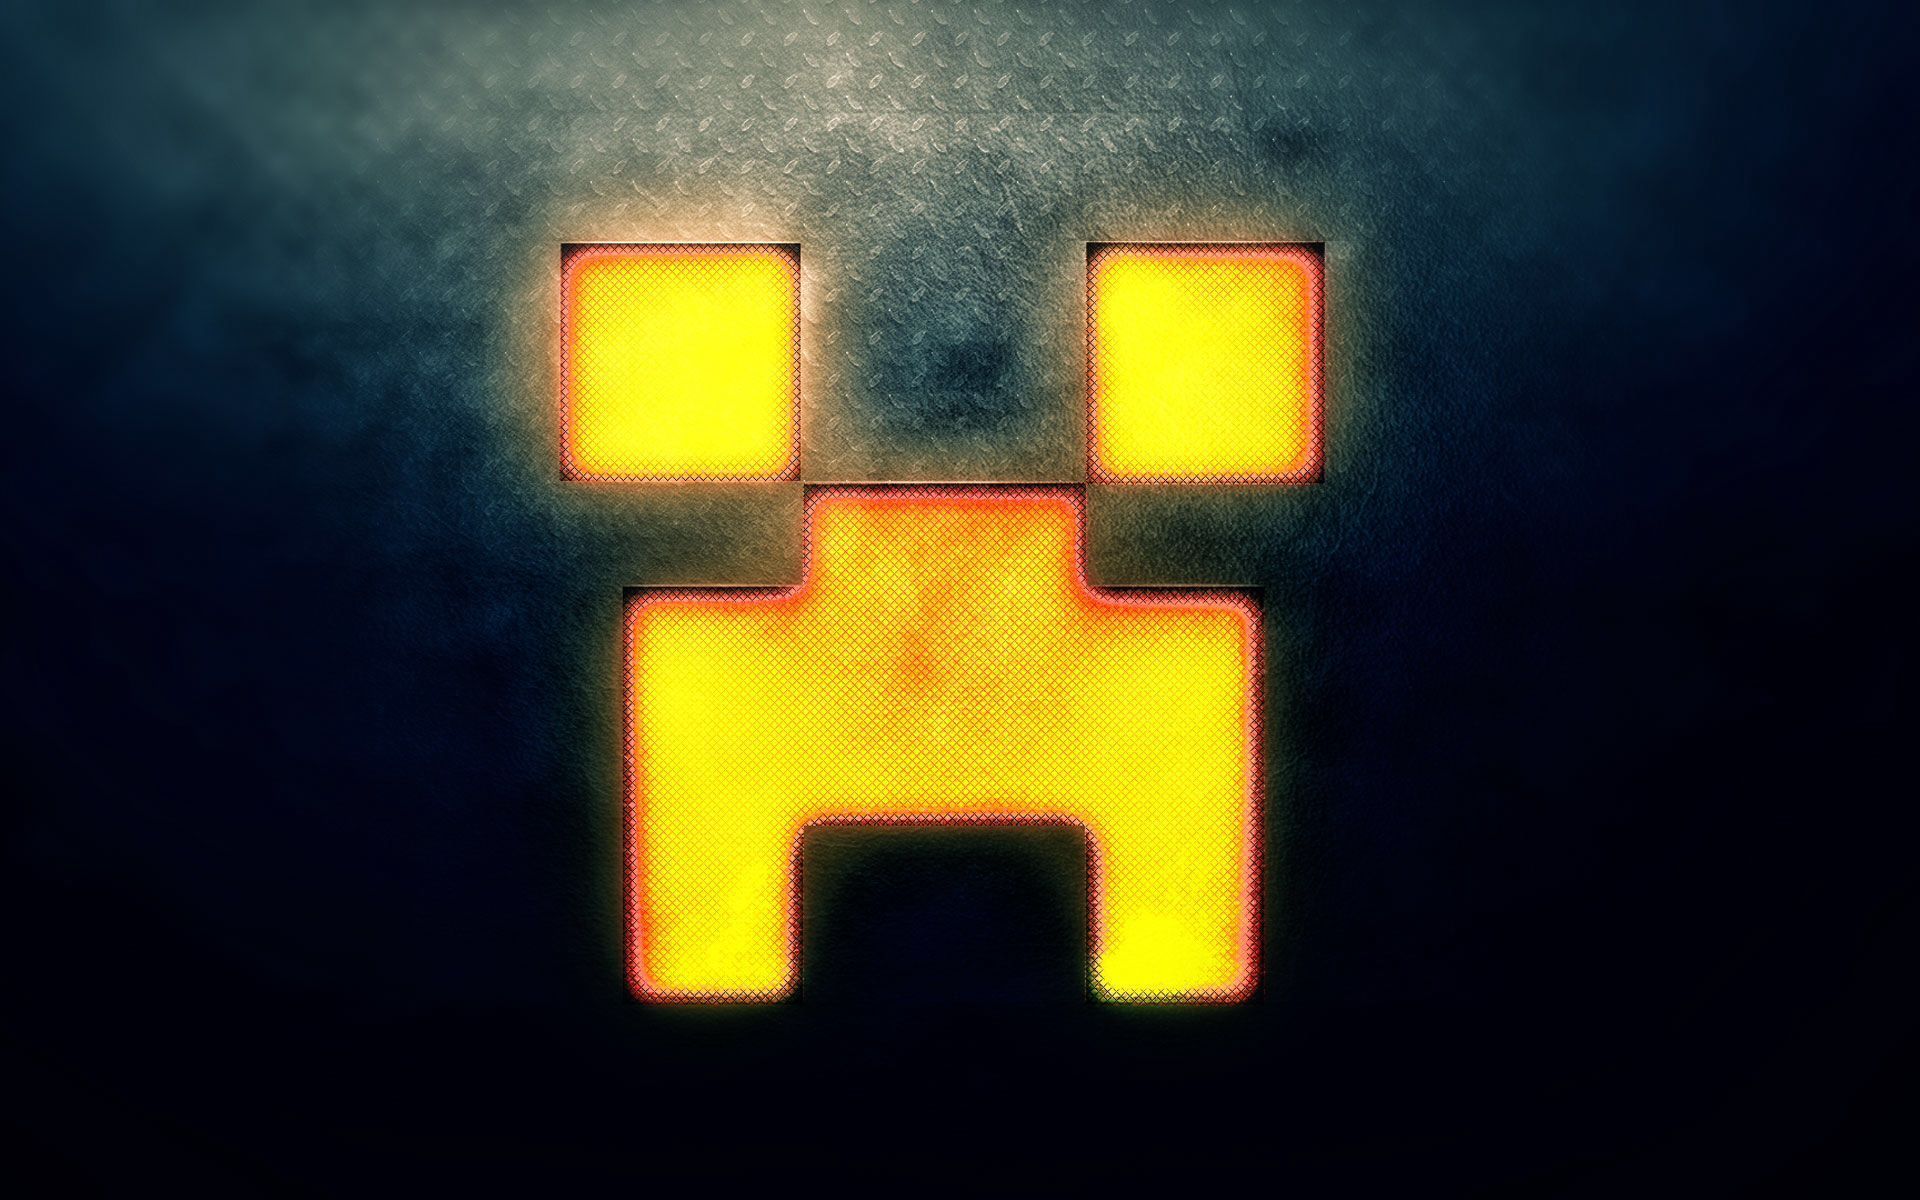 Minecraft Lava Creeper Wallpaper on .wallpaper.dog